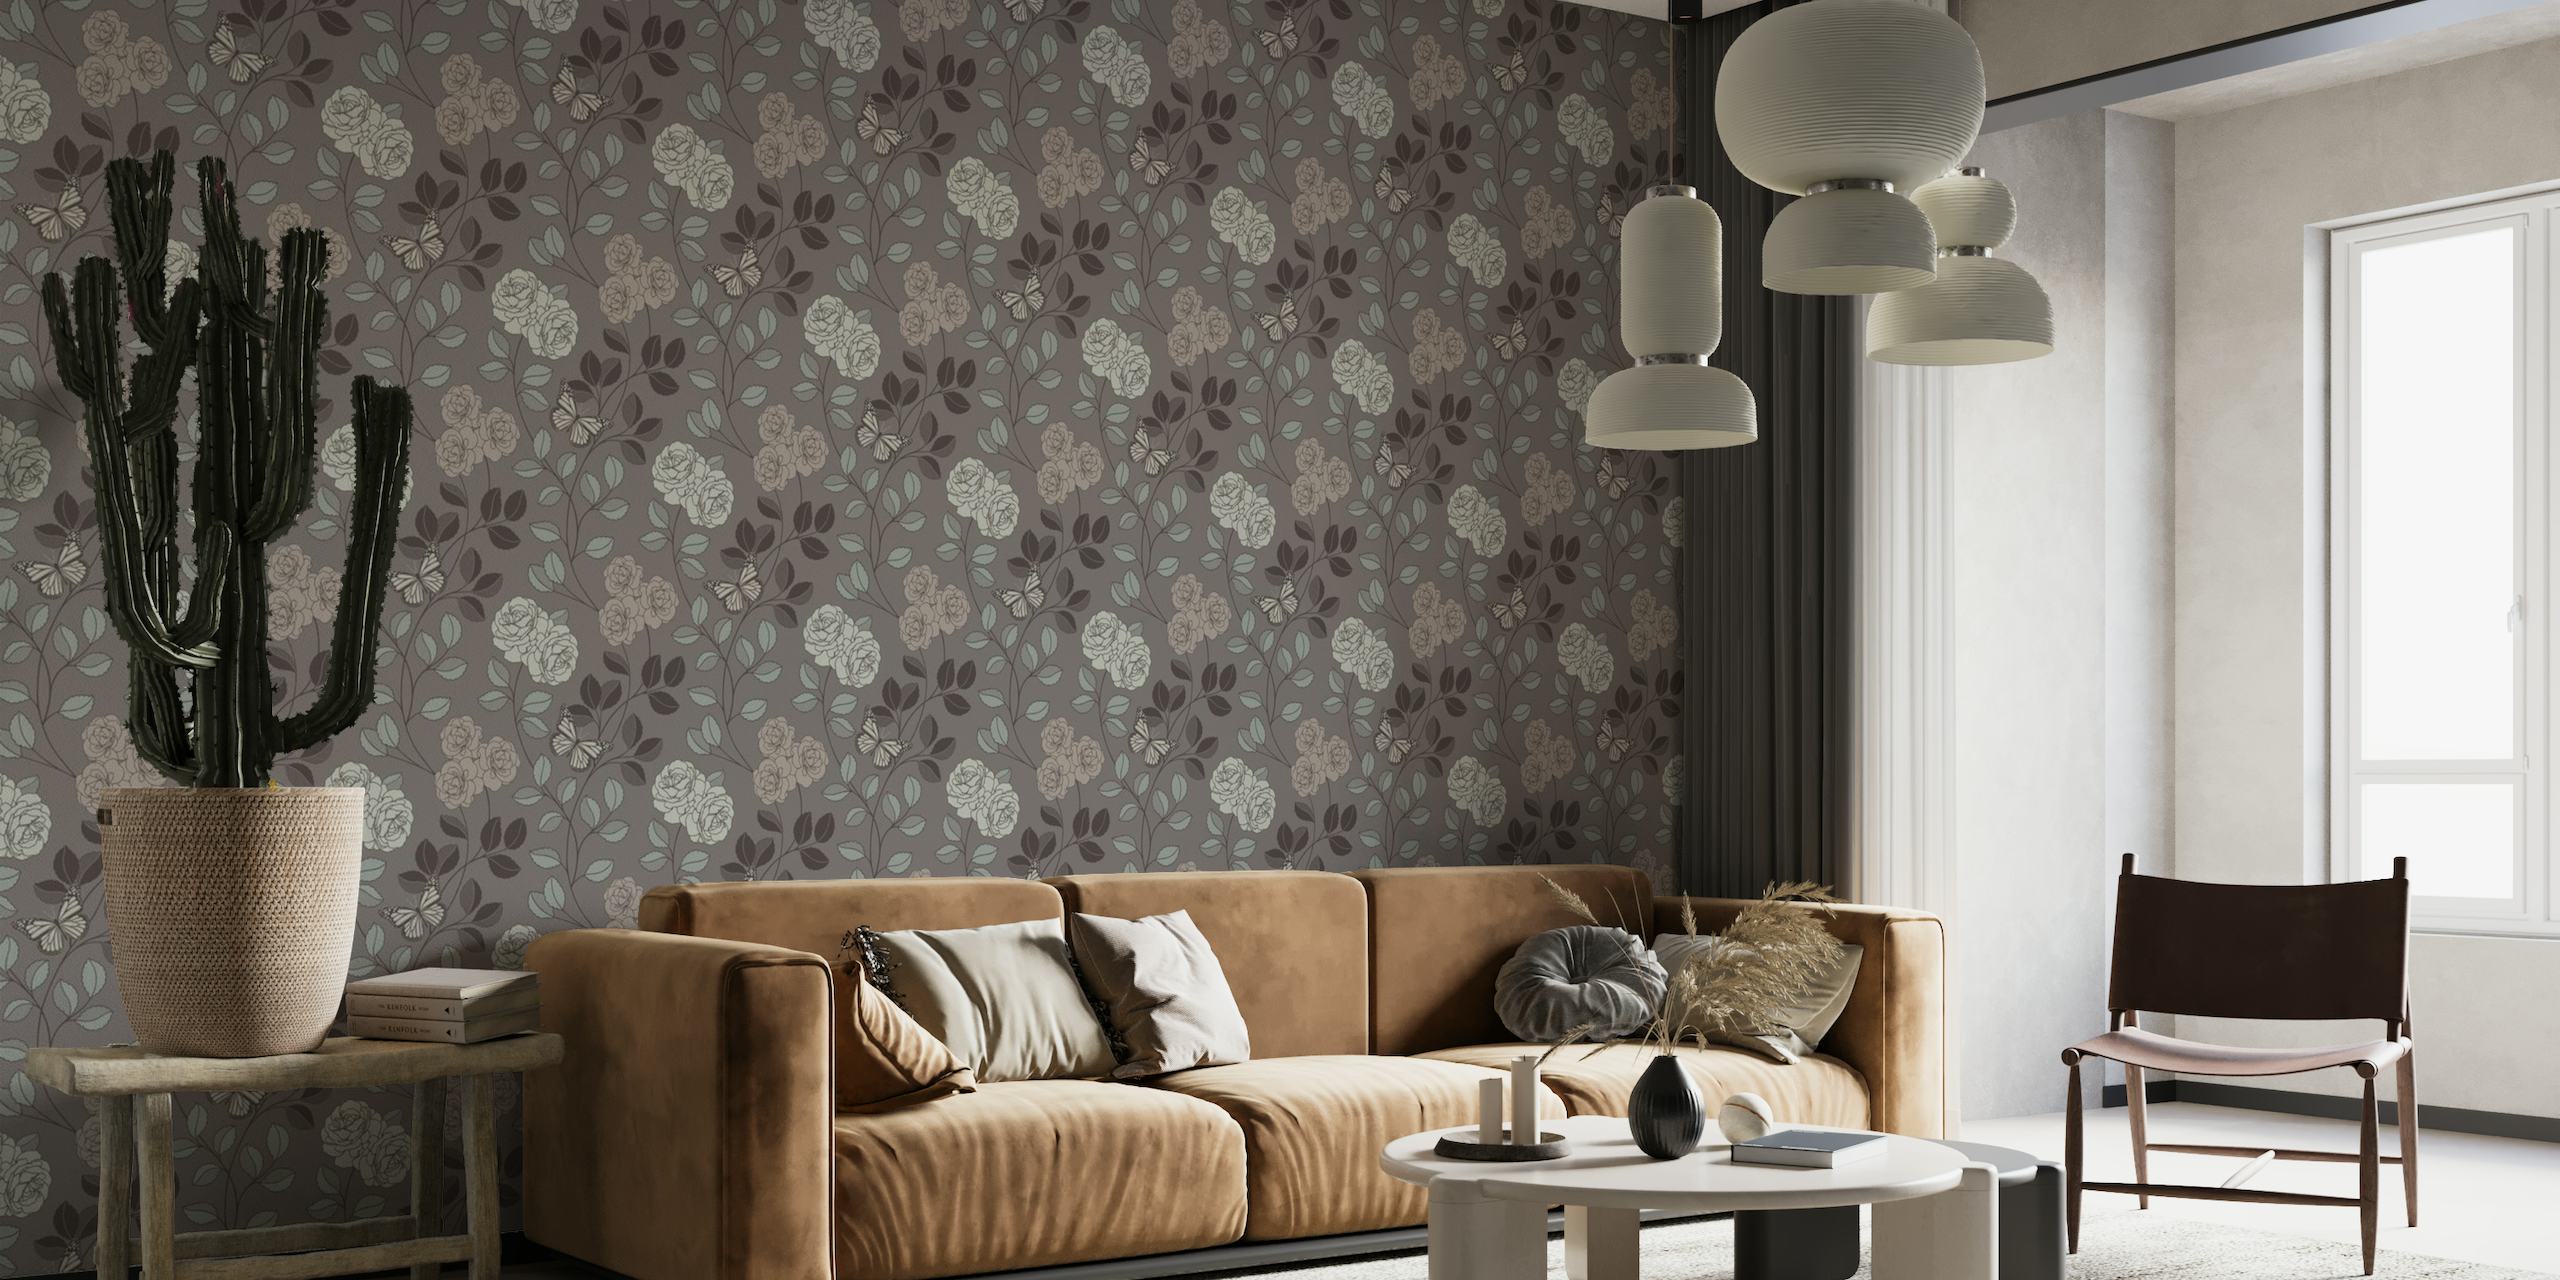 Elegante mural de pared gris con dibujos de flores y mariposas para crear un ambiente hogareño tranquilo.